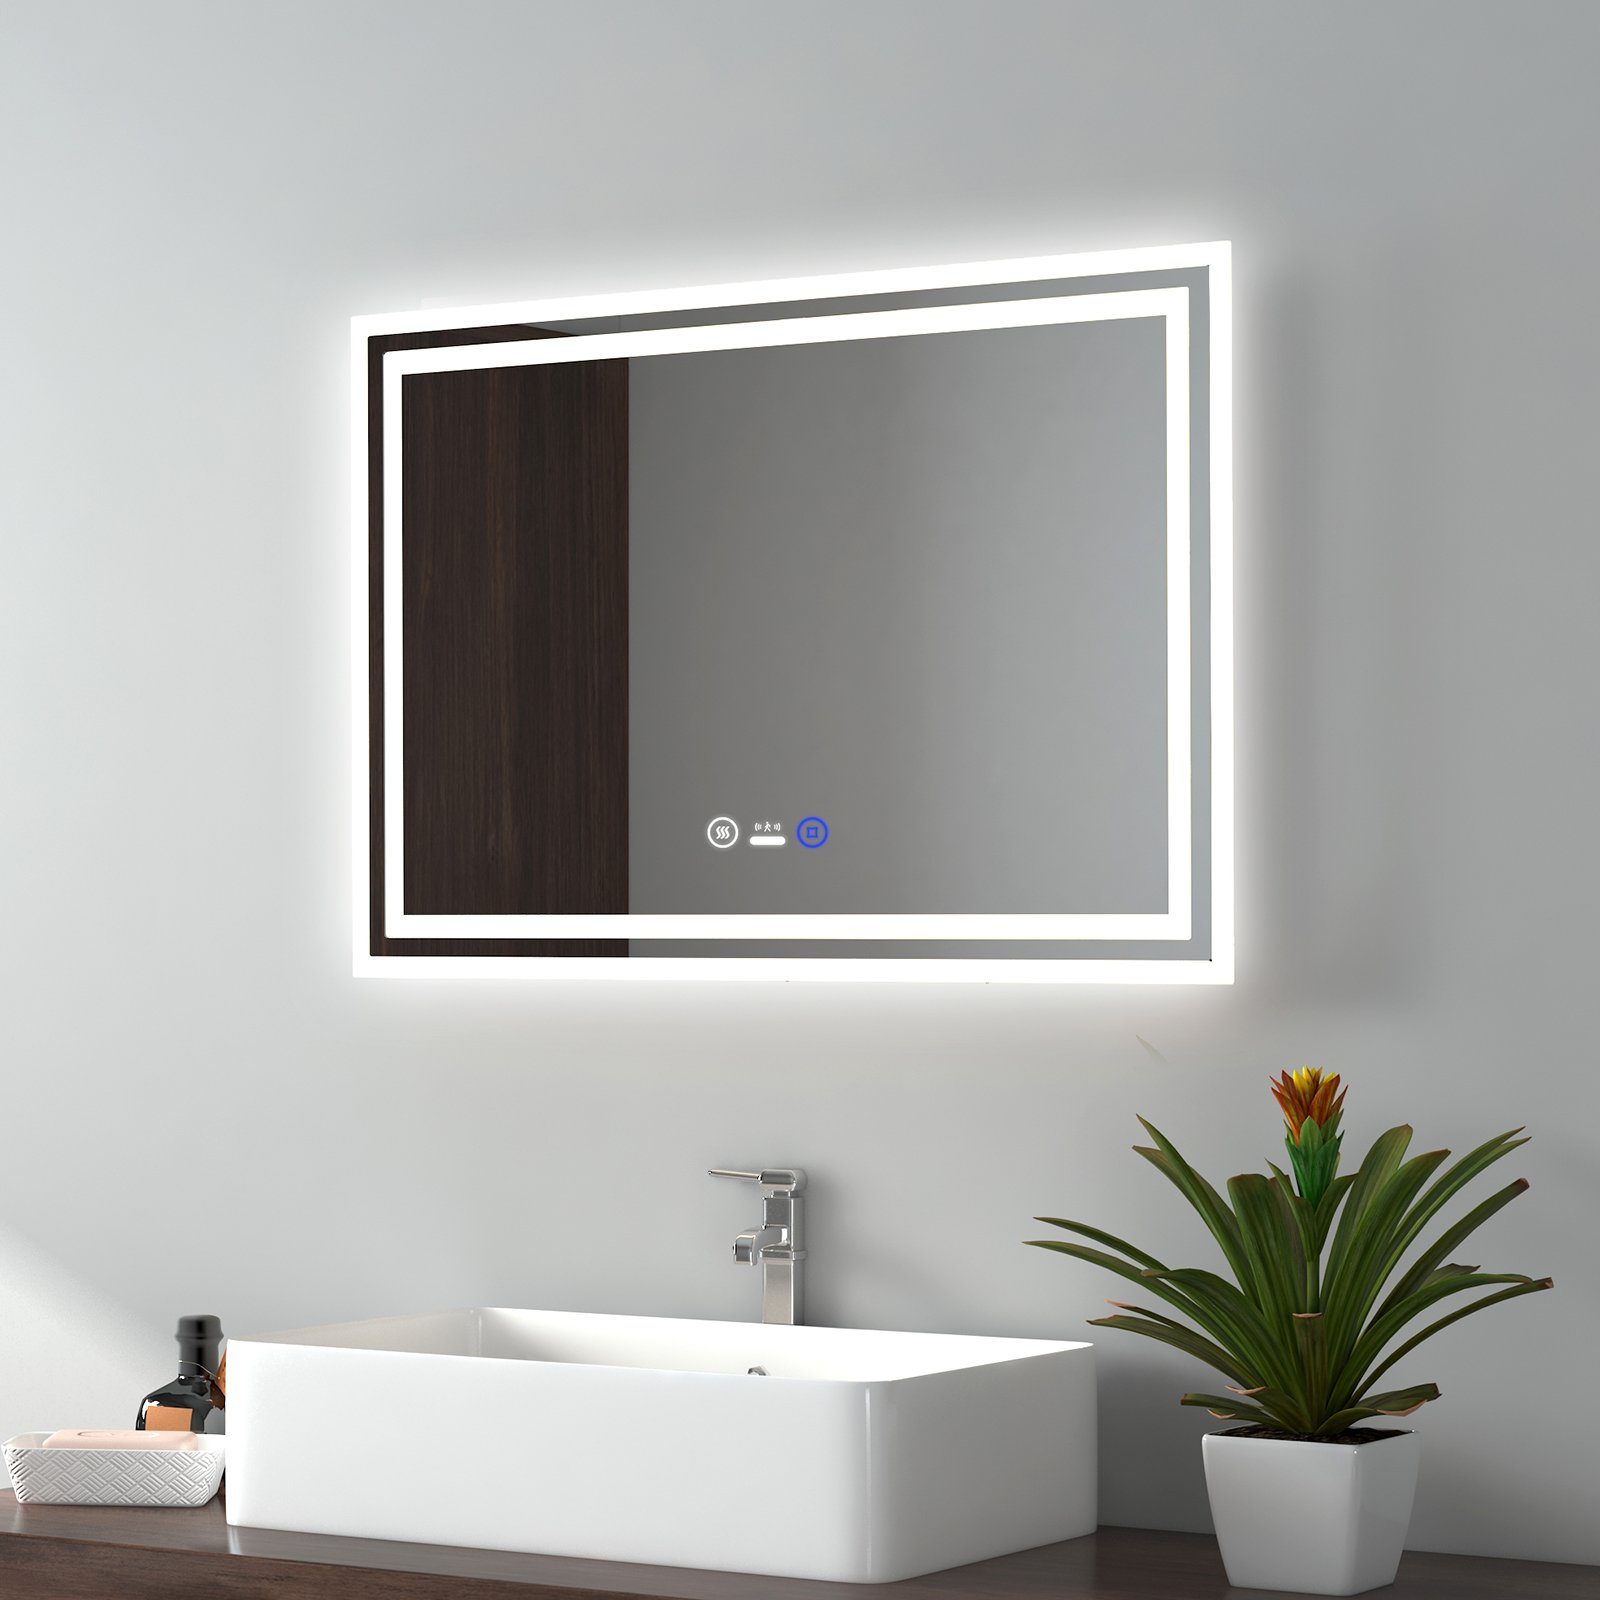 EMKE Badspiegel LED Badspiegel mit Beleuchtung Bewegungssensor Wandspiegel,  mit Beschlagfreiheit, Dimmbarem Touch-Schalter und 3 Farben des Lichts